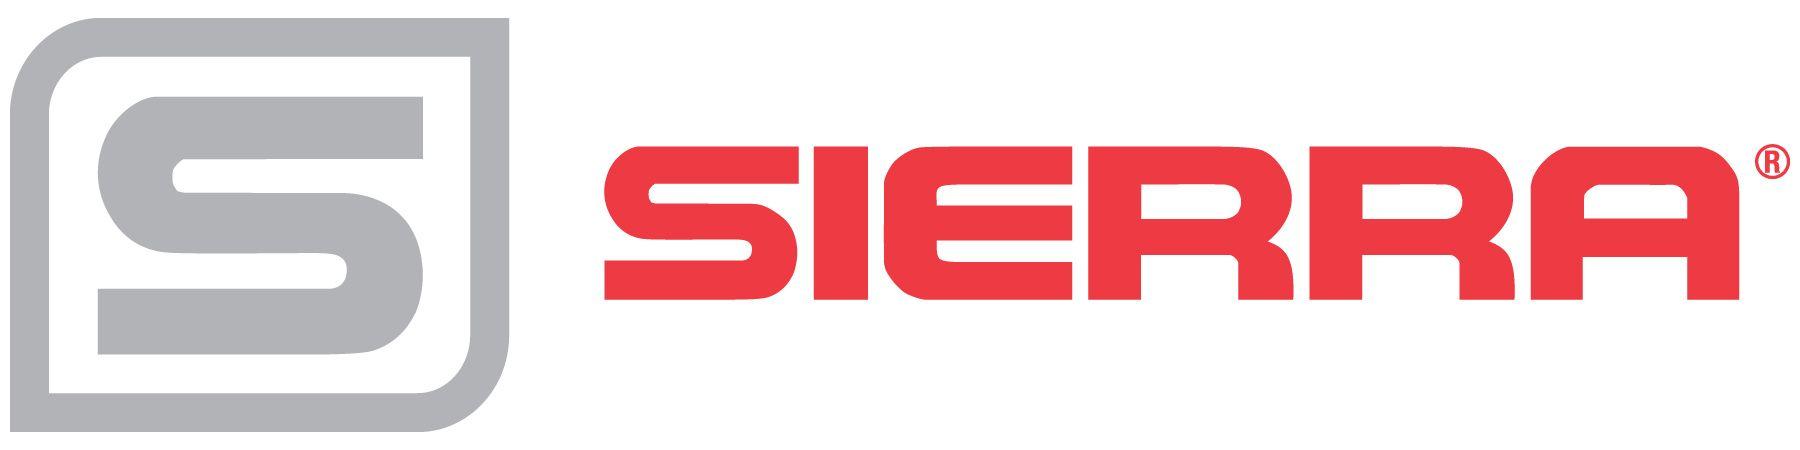 Seirra Logo - Sierra Logo